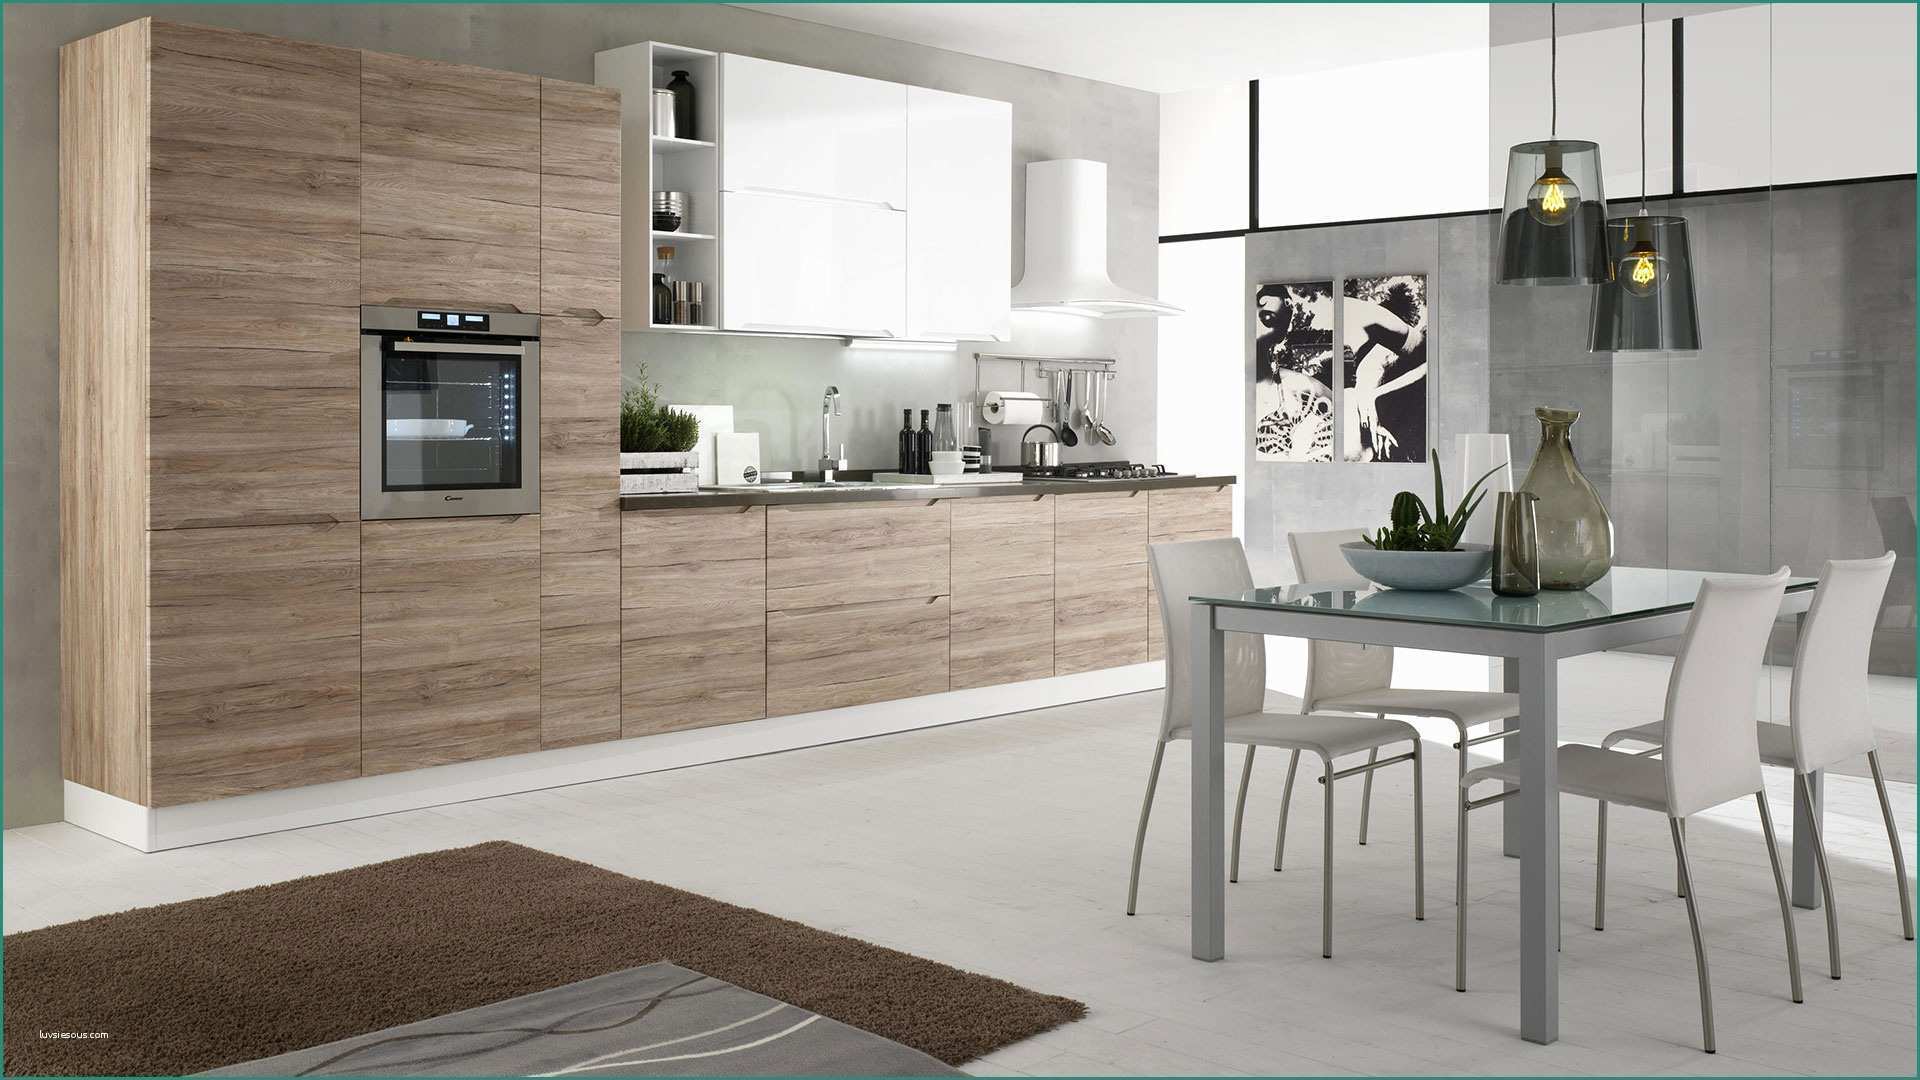 Cucina Laccata Bianca E Immagini Di Cucine Moderne Excellent soggiorno Open Space soggiorno